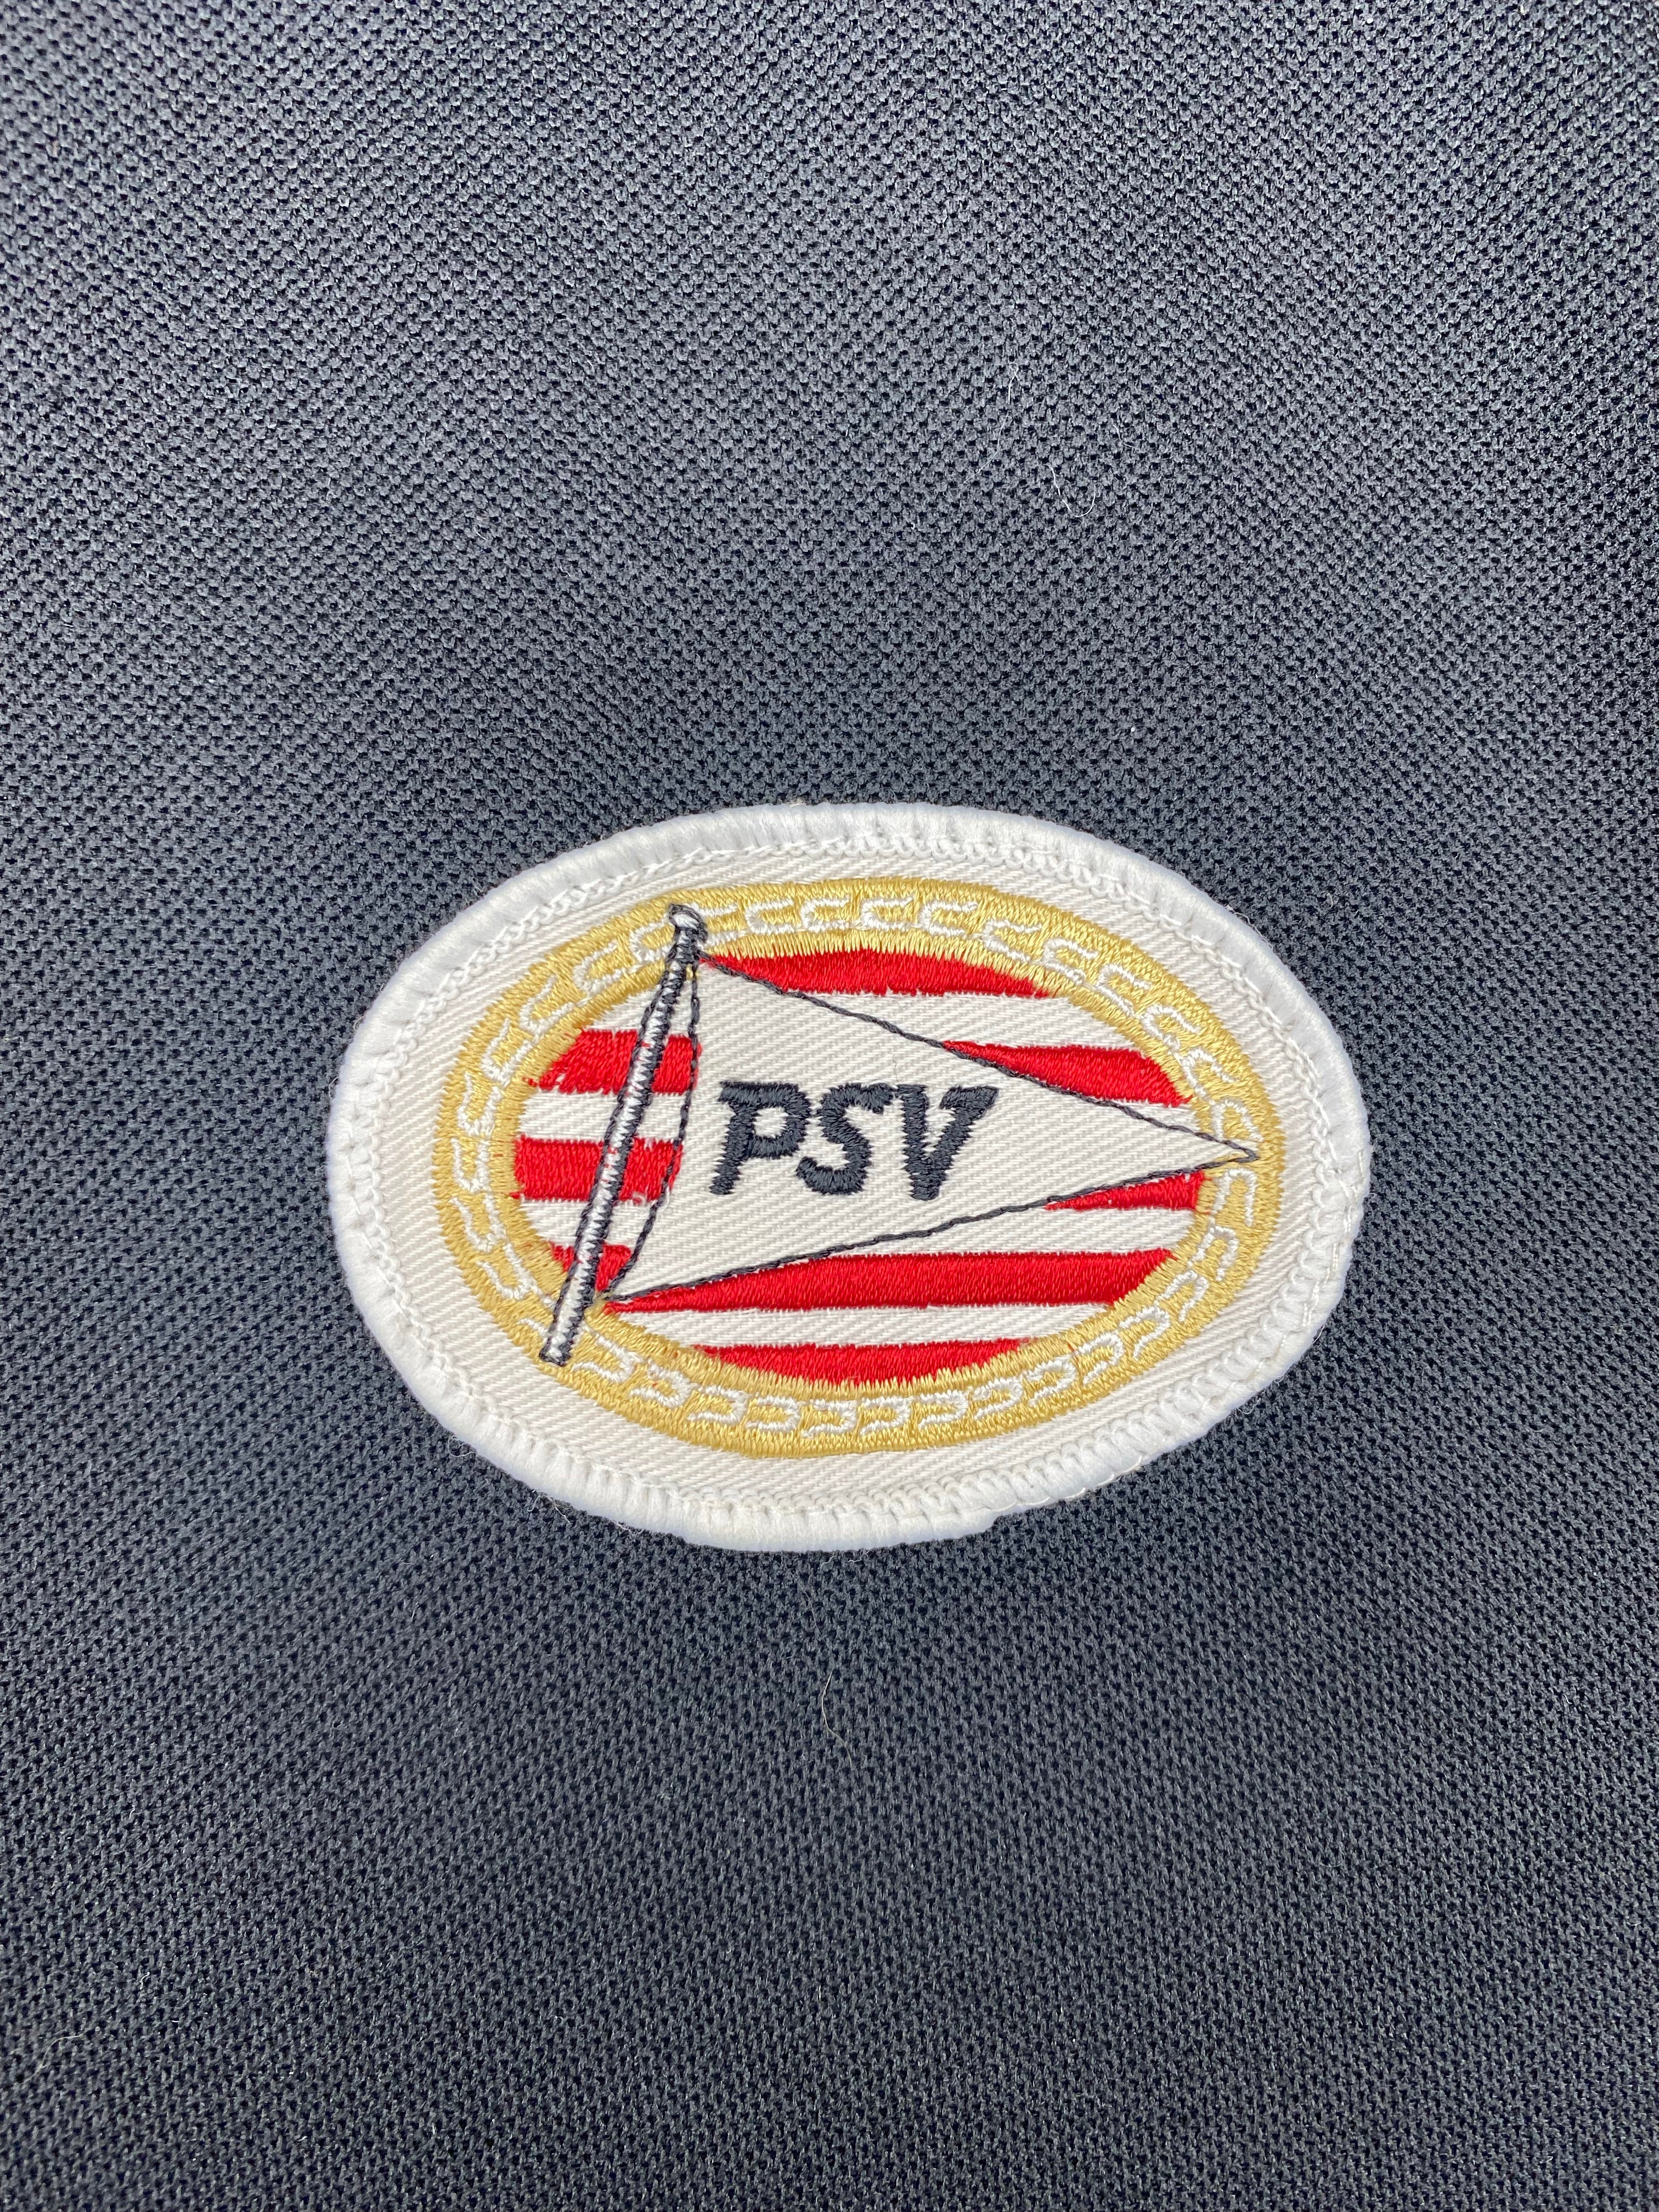 Sweat-shirt PSV Eindhoven 2000/01 (XL) 8,5/10 